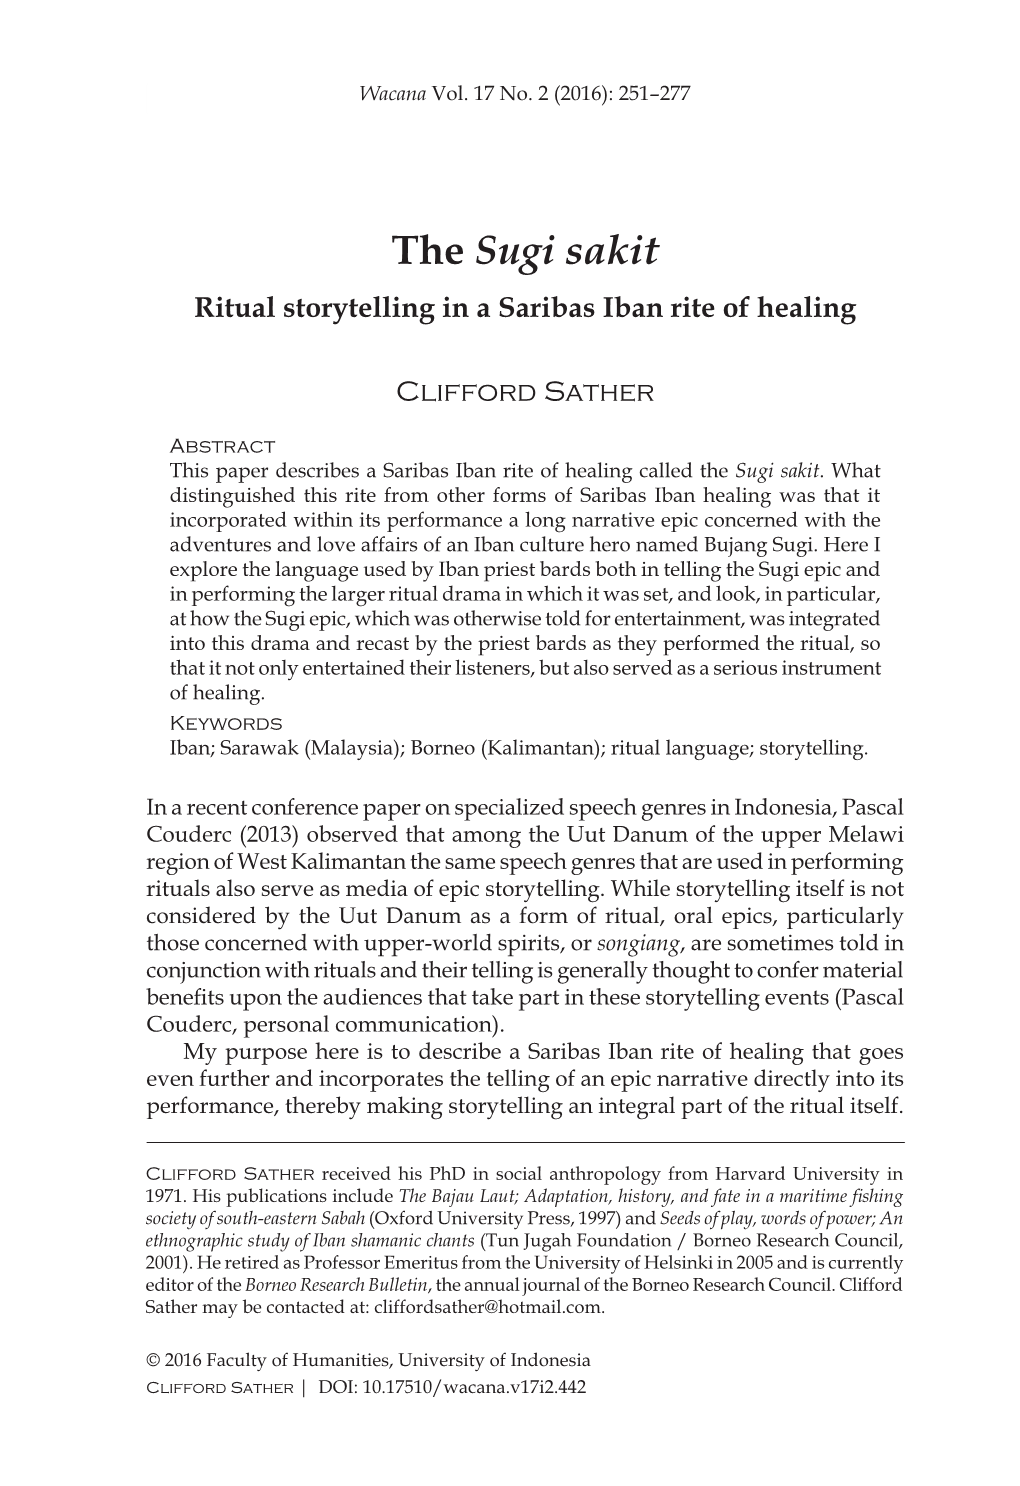 The Sugi Sakit Ritual Storytelling in a Saribas Iban Rite of Healing